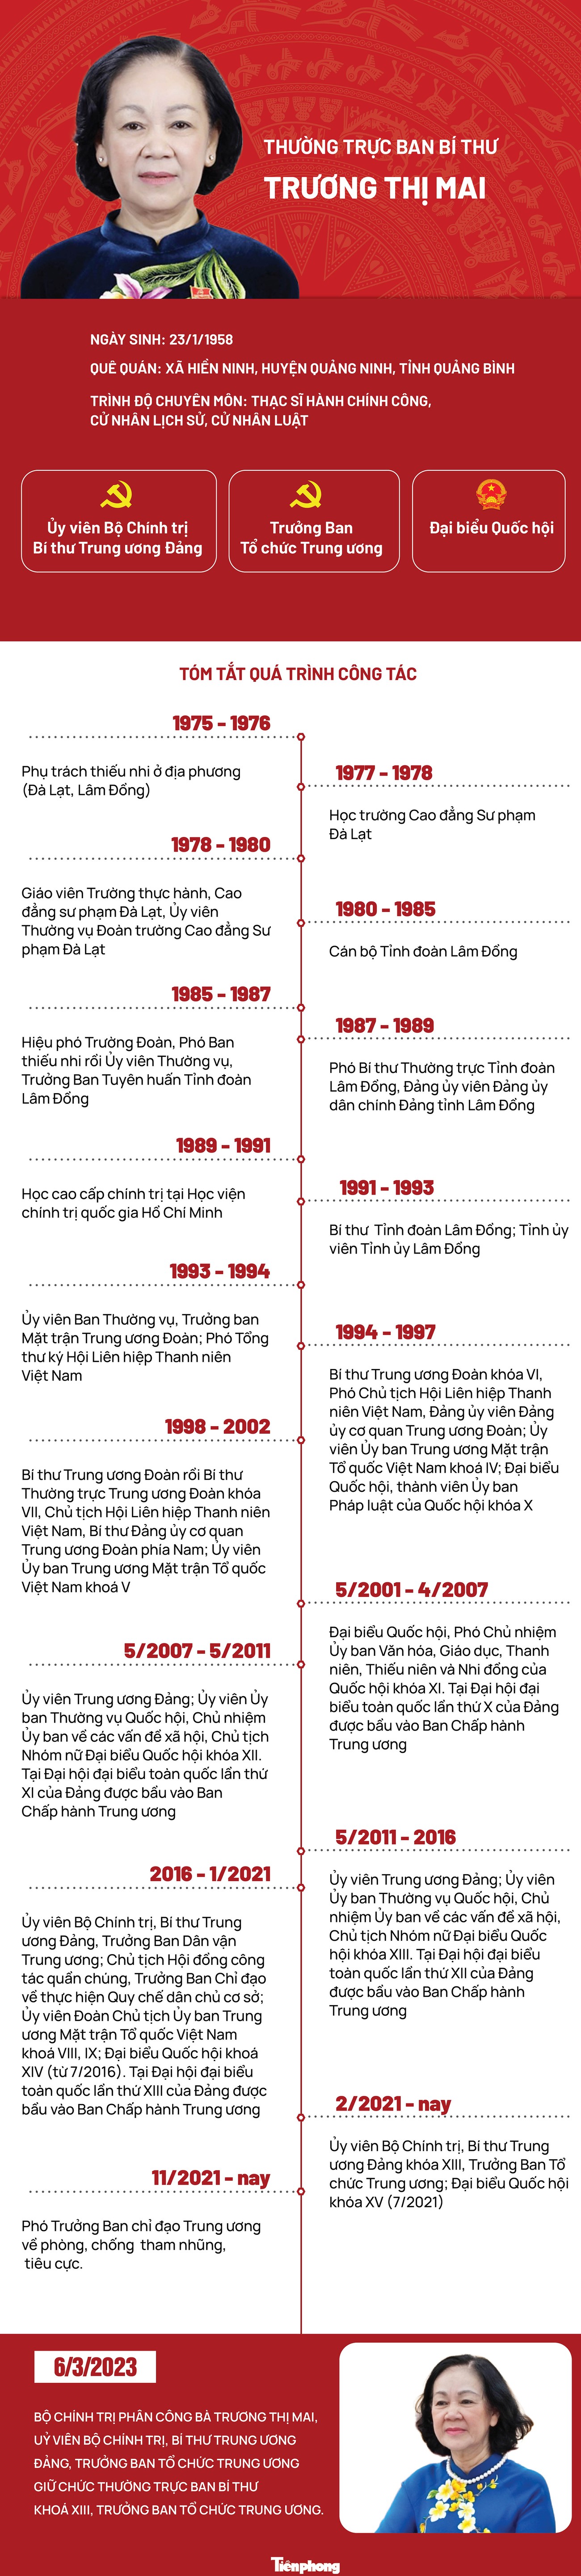 [Infographic] Chân dung Thường trực Ban Bí thư Trương Thị Mai - 1